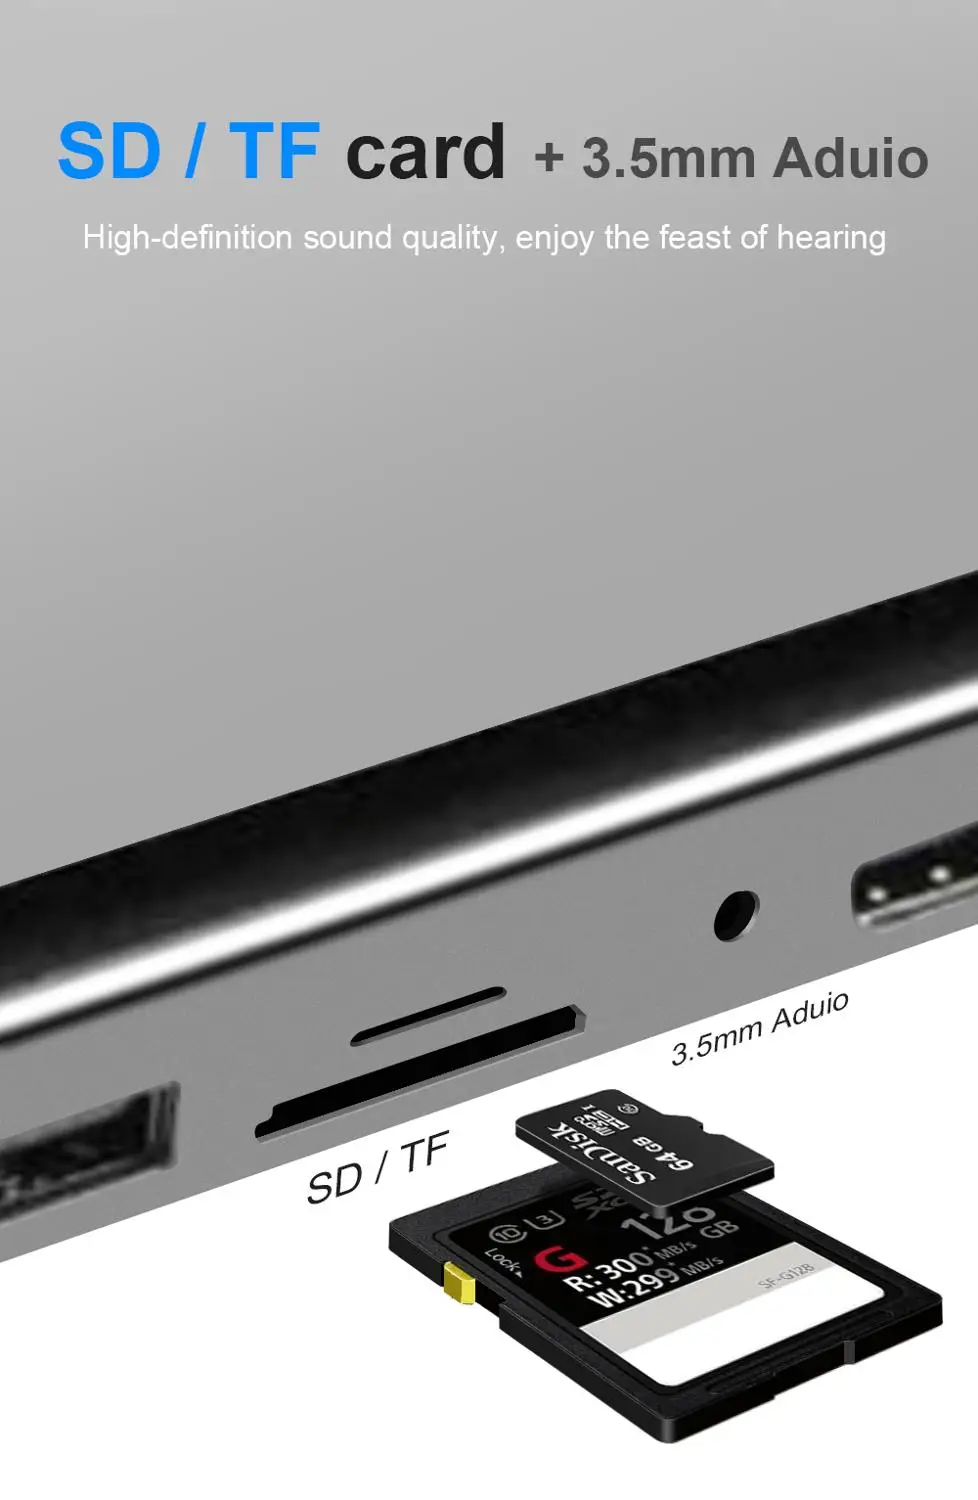 DeepFox 11- - - -1 Modelis C Hub USB C iki HDMI VGA, Lan, USB 3.0 Prievadus, SD/TF Kortelių Skaitytuvas USB-C Maitinimo Pristatymo už 